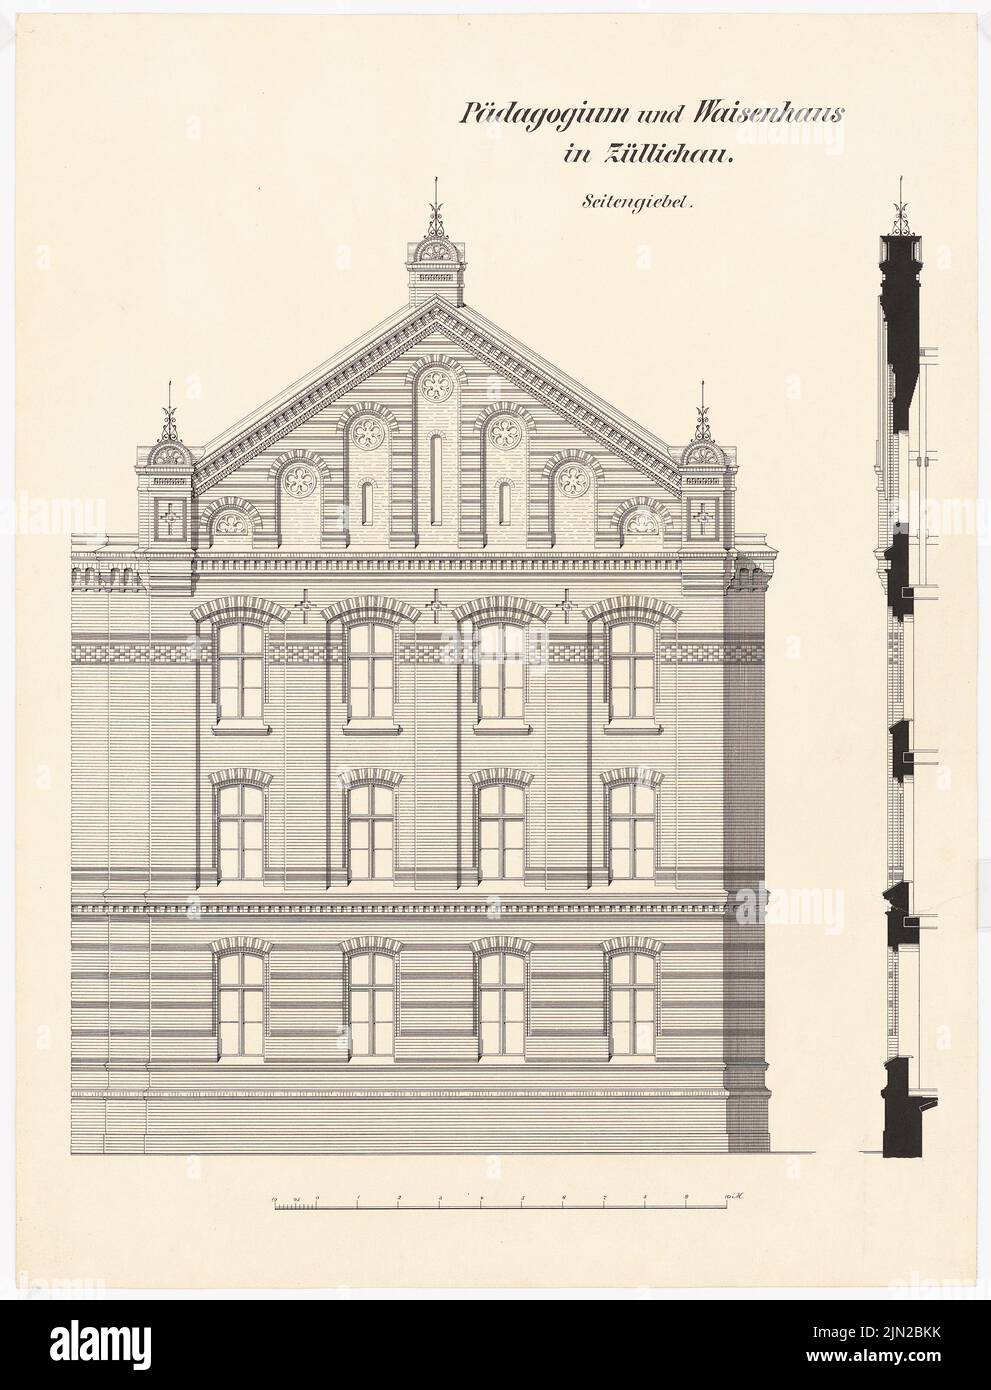 Knoblauch & Wex, pedagogía real y orfanato, Züllichau: Frontón lateral superior, corte vertical de fachada. Tinta sobre cartón, 62,8 x 47,9 cm (incluidos los bordes de escaneado) Foto de stock